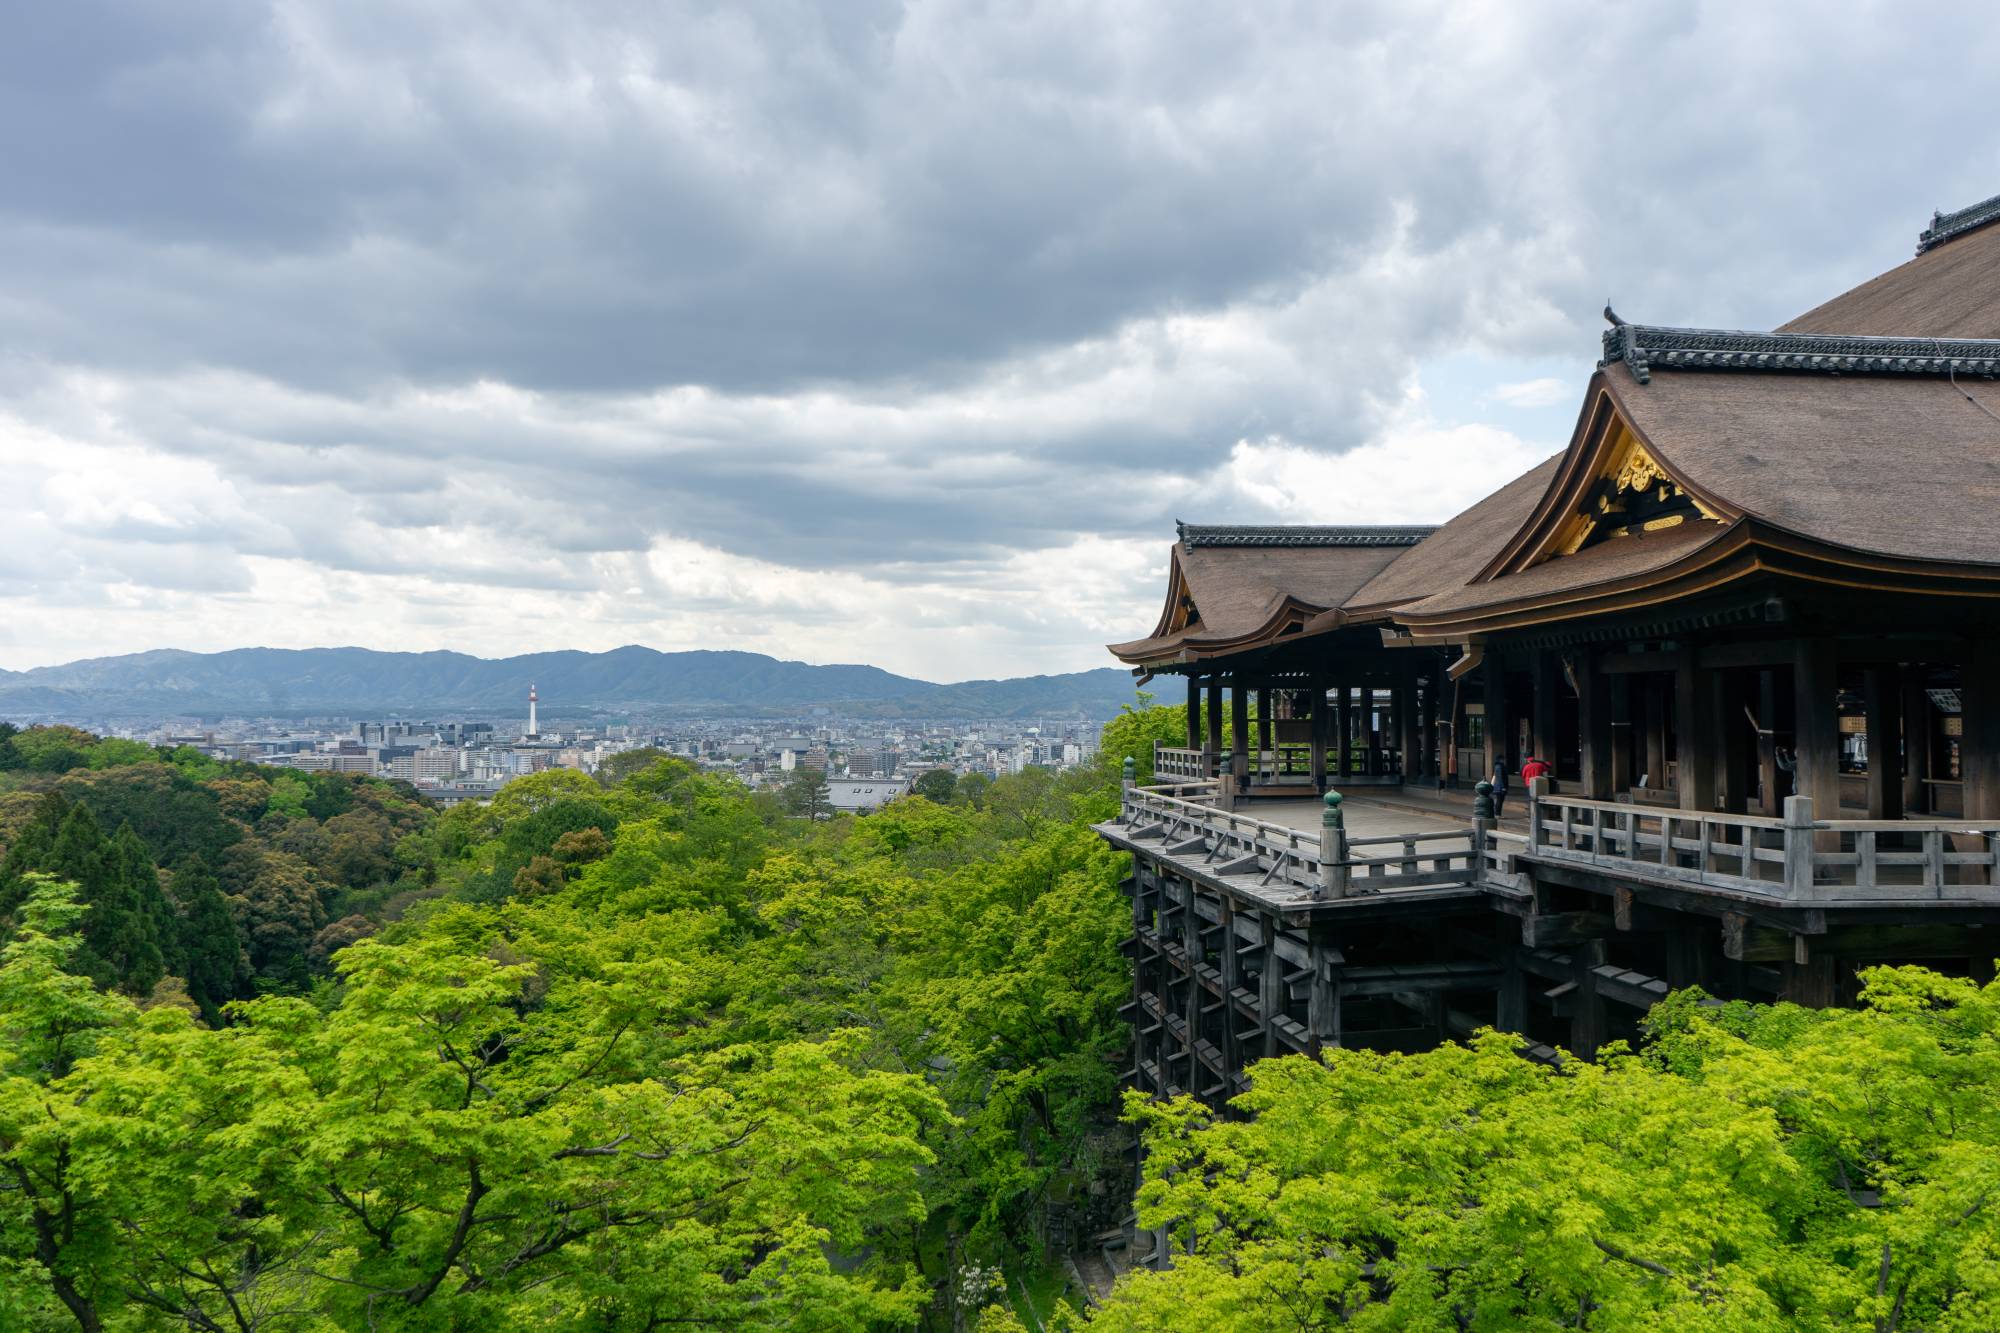 Mê mẩn hình ảnh yên bình của thành phố Kyoto, Nhật Bản những ngày vắng khách du lịch 6